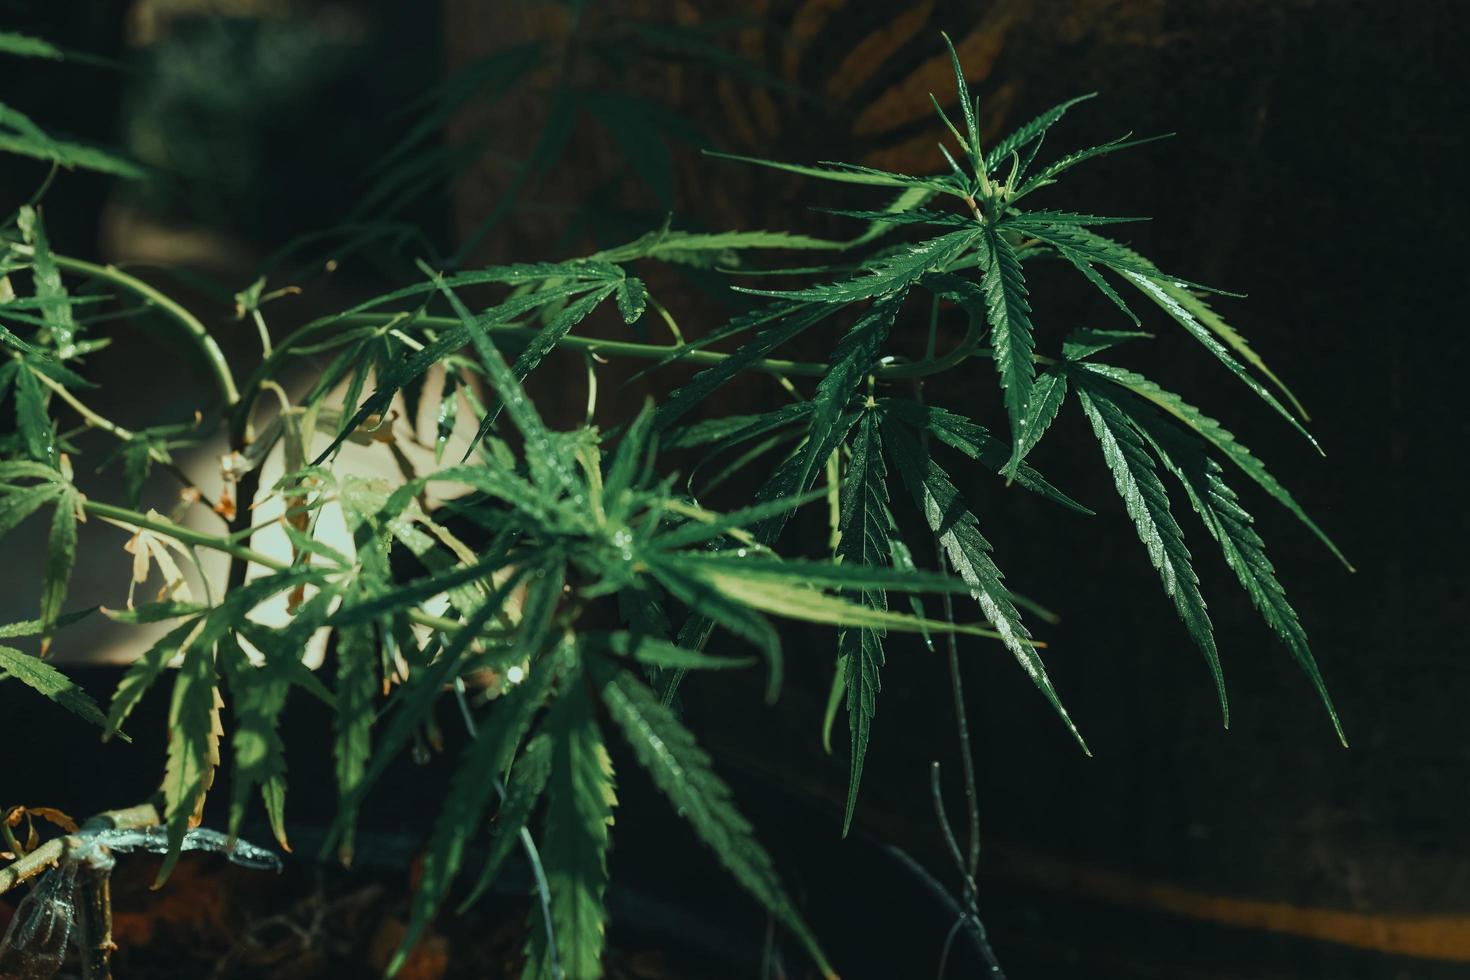 cannabis weed.it används för att behandla depression och hjälpa till att slappna av i sinnet. begreppet växtbaserad alternativ medicin, cbd-olja, läkemedelsindustrin botar olika sjukdomar. foto